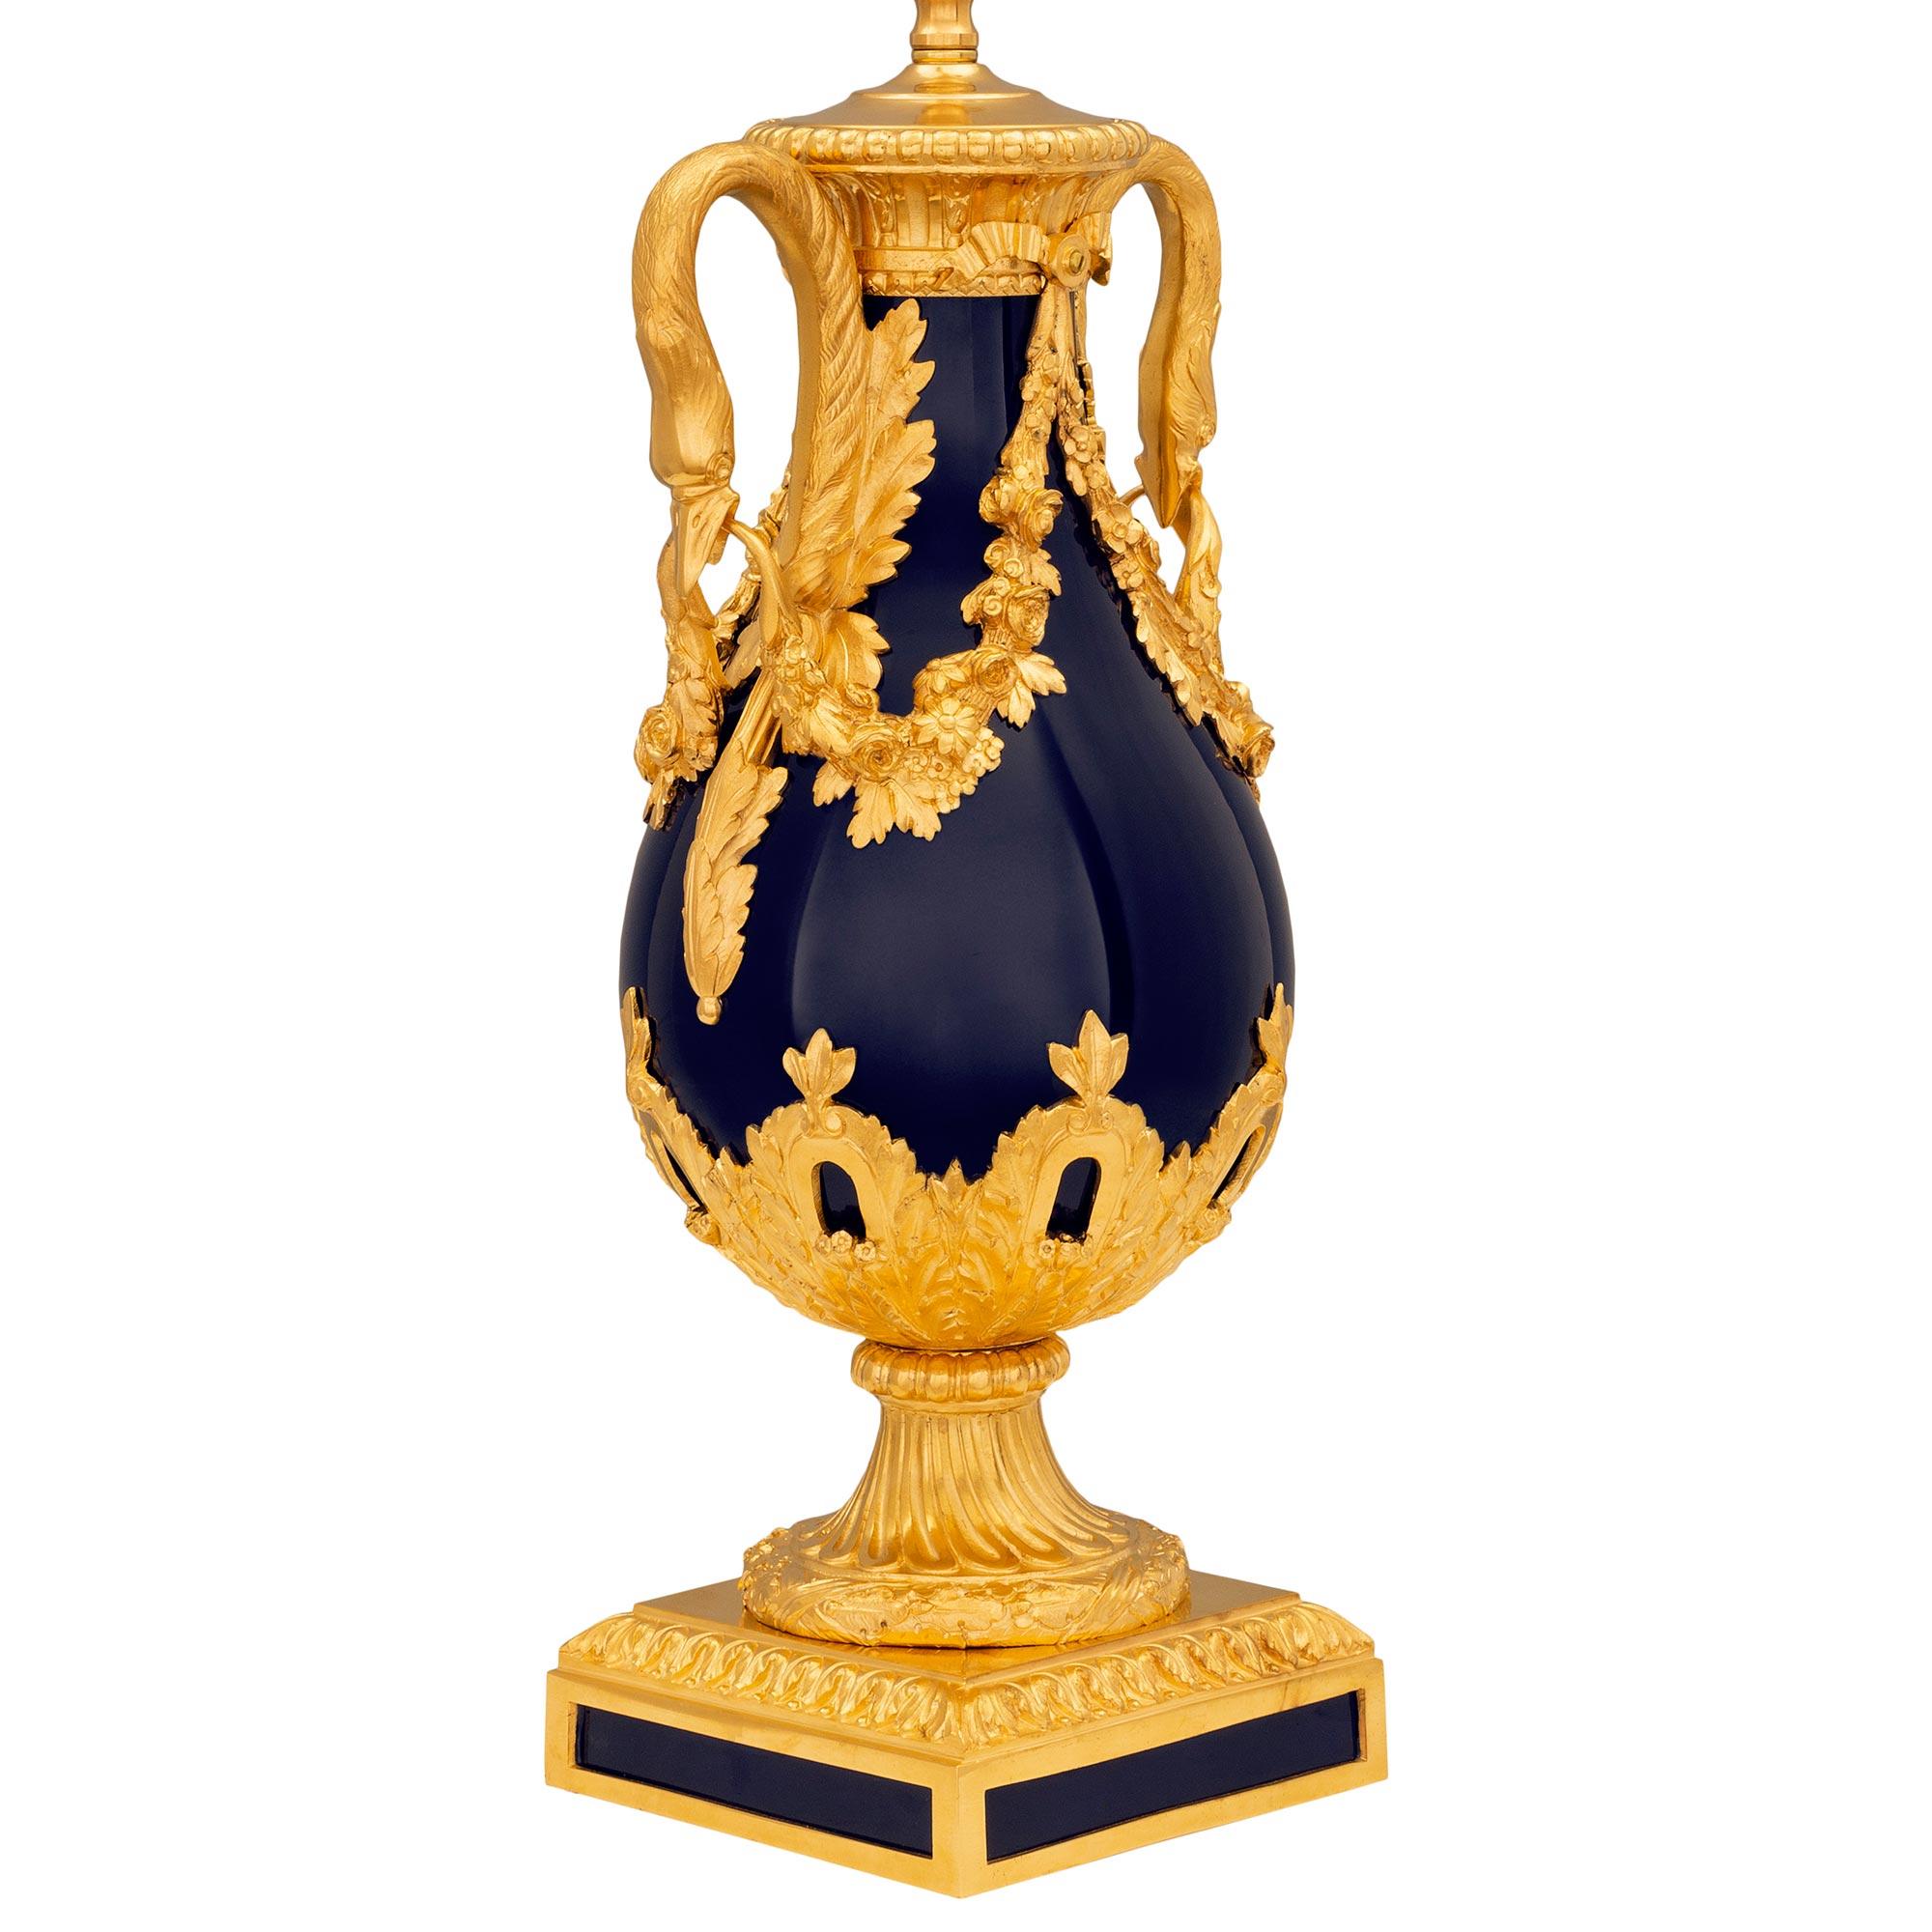 Une lampe de très haute qualité en porcelaine de Sèvres et bronze doré de style Louis XVI du 19ème siècle. La lampe est surélevée par une base carrée en bronze doré avec d'élégantes et uniques plaques de porcelaine ajustées de chaque côté avec une